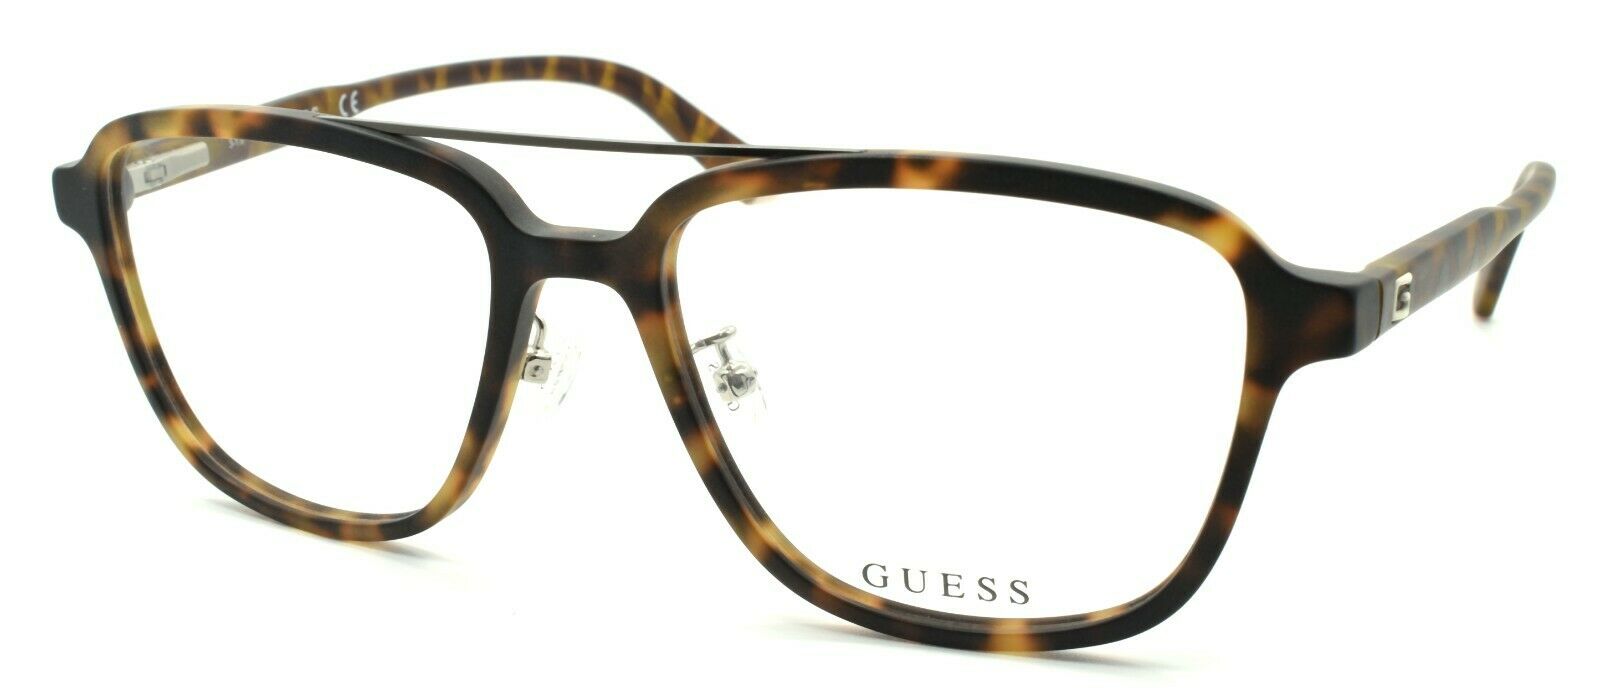 1-GUESS GU1975-F 052 Men's Eyeglasses Frames Aviator 55-17-145 Dark Havana-889214079077-IKSpecs